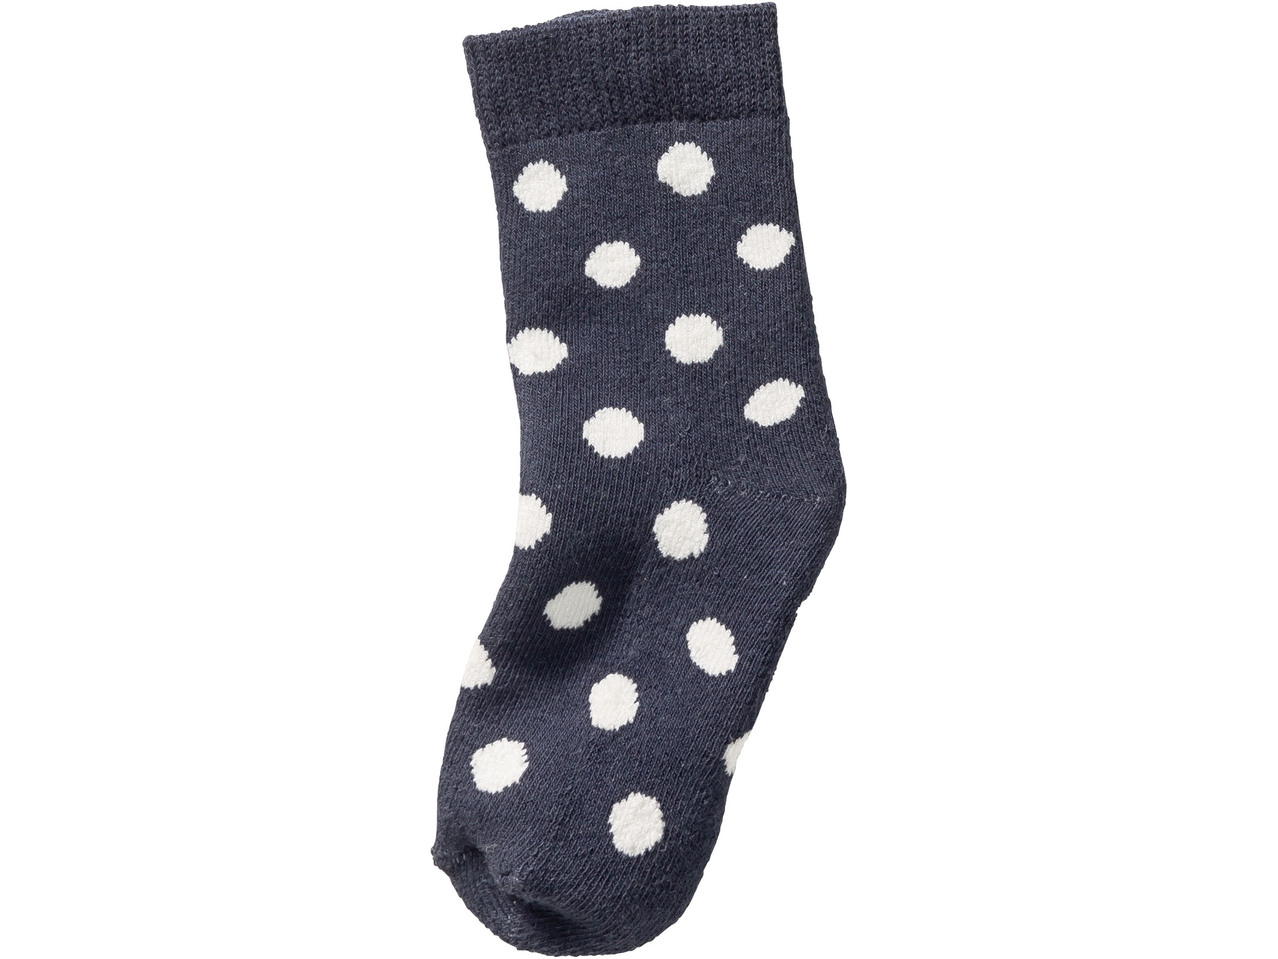 Girls' Socks, 5 pairs